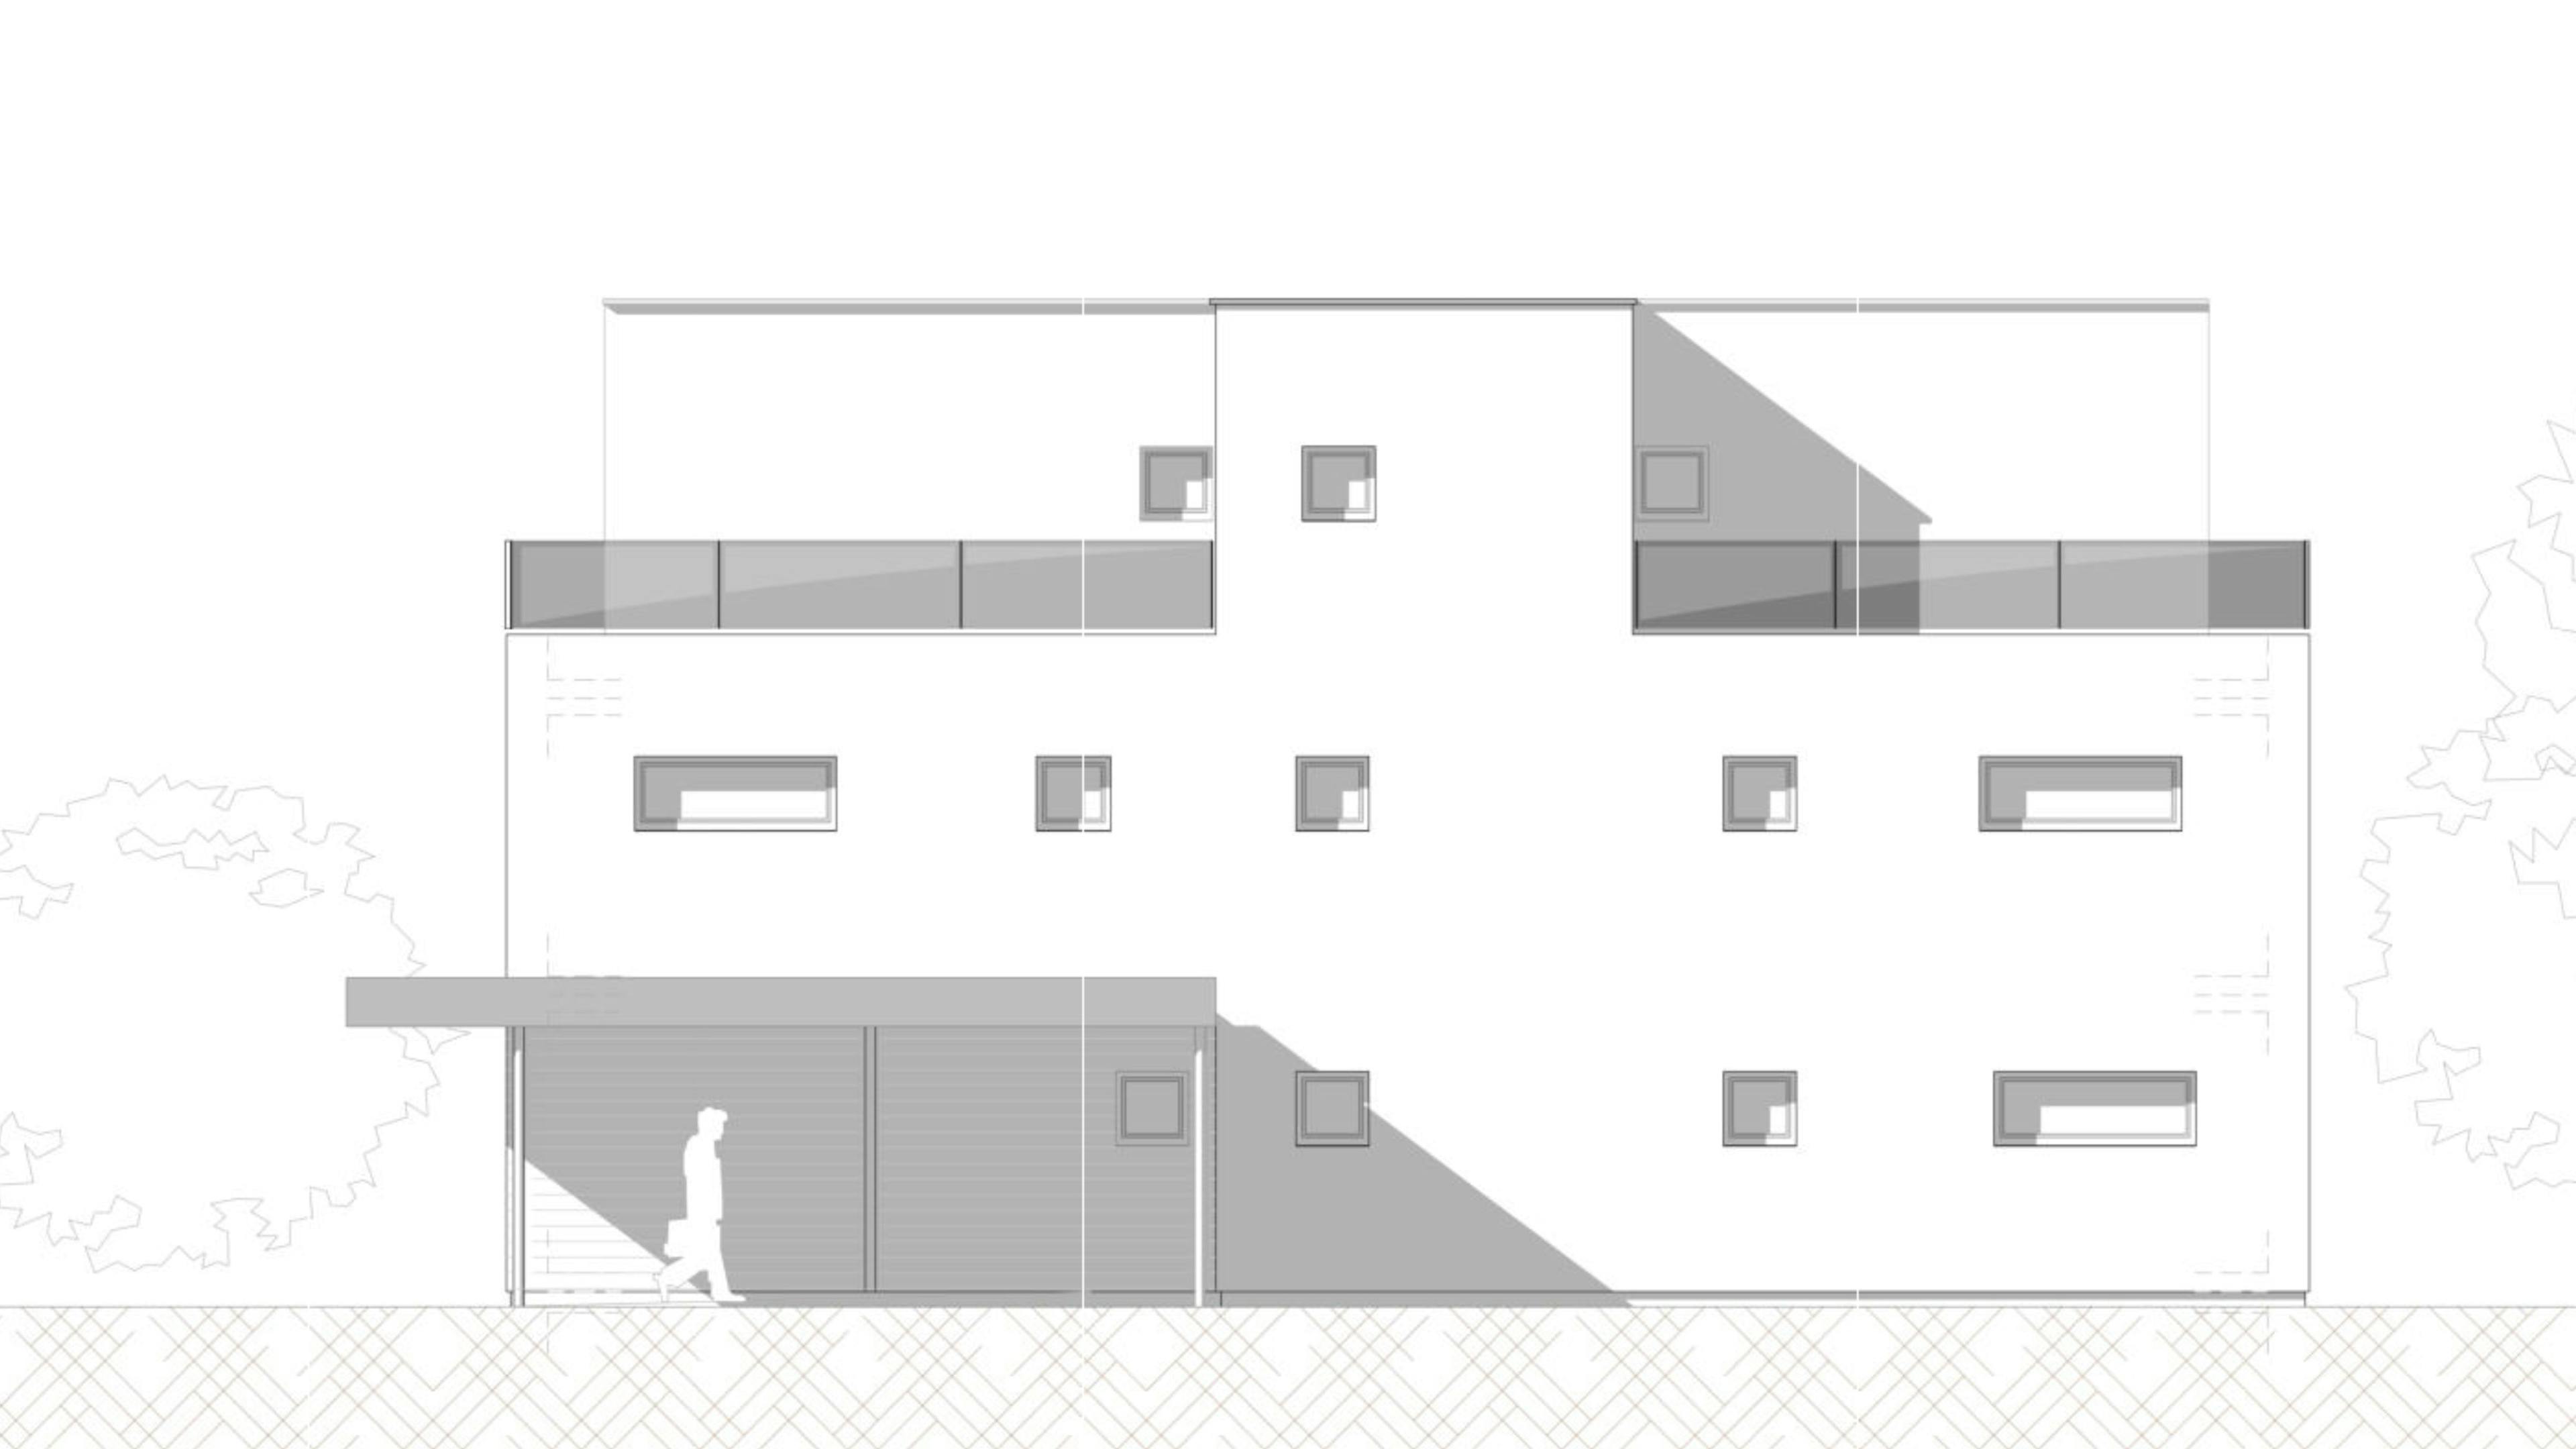 Haas Wohnbau Gebäudetypen Planungsprojekte 6 - 7 Wohneinheiten Grundrisse